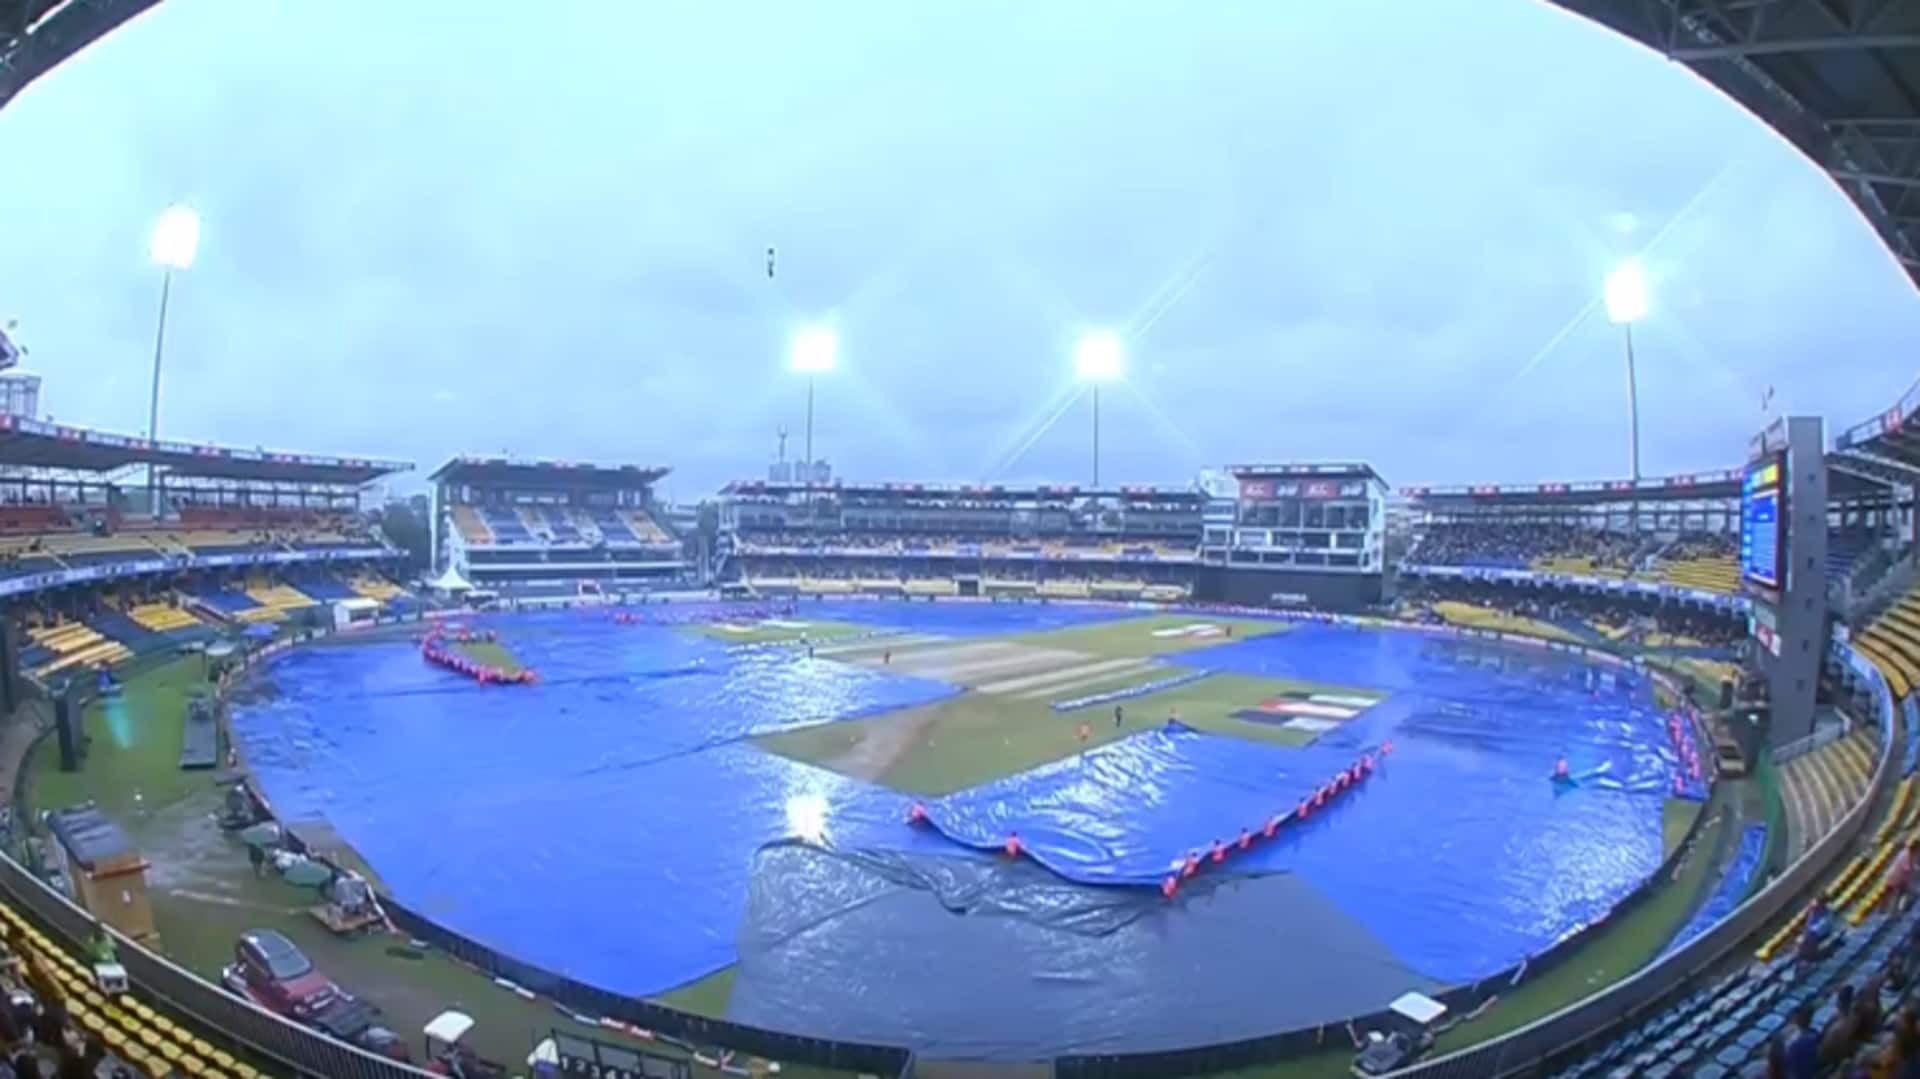 श्रीलंका बनाम पाकिस्तान: बारिश के चलते टॉस में देरी, दोनों टीमों को 20-20 ओवर खेलना जरूरी